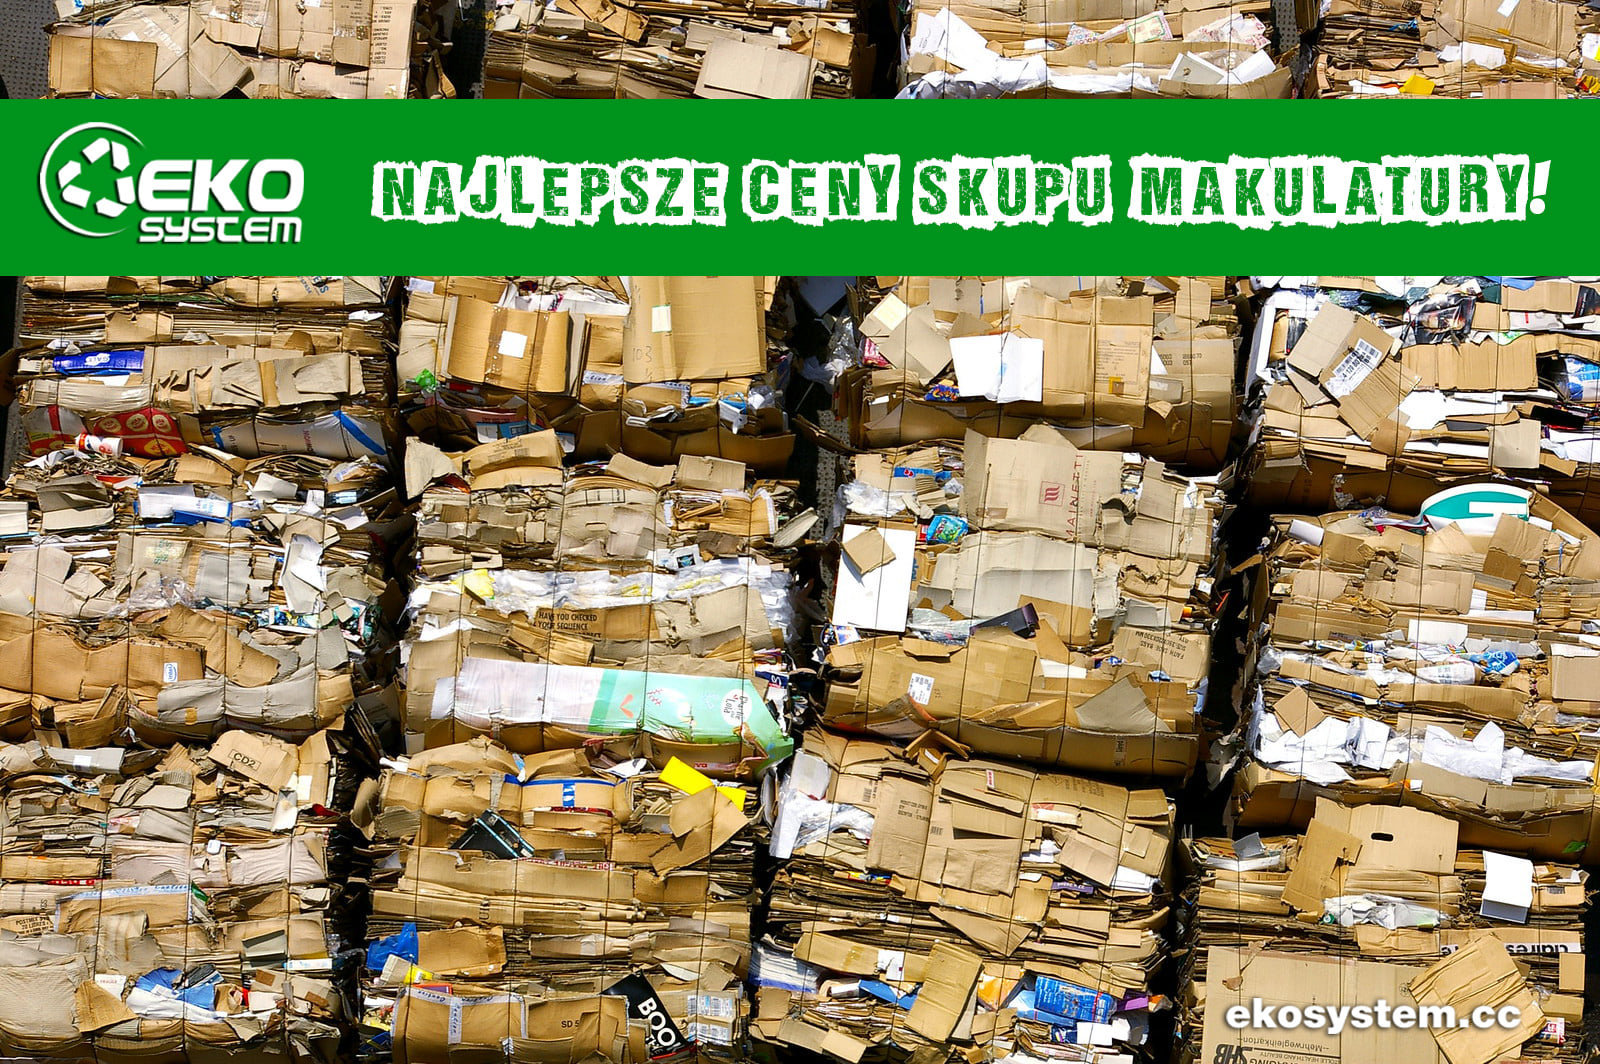 Odbiór i recykling makulatury